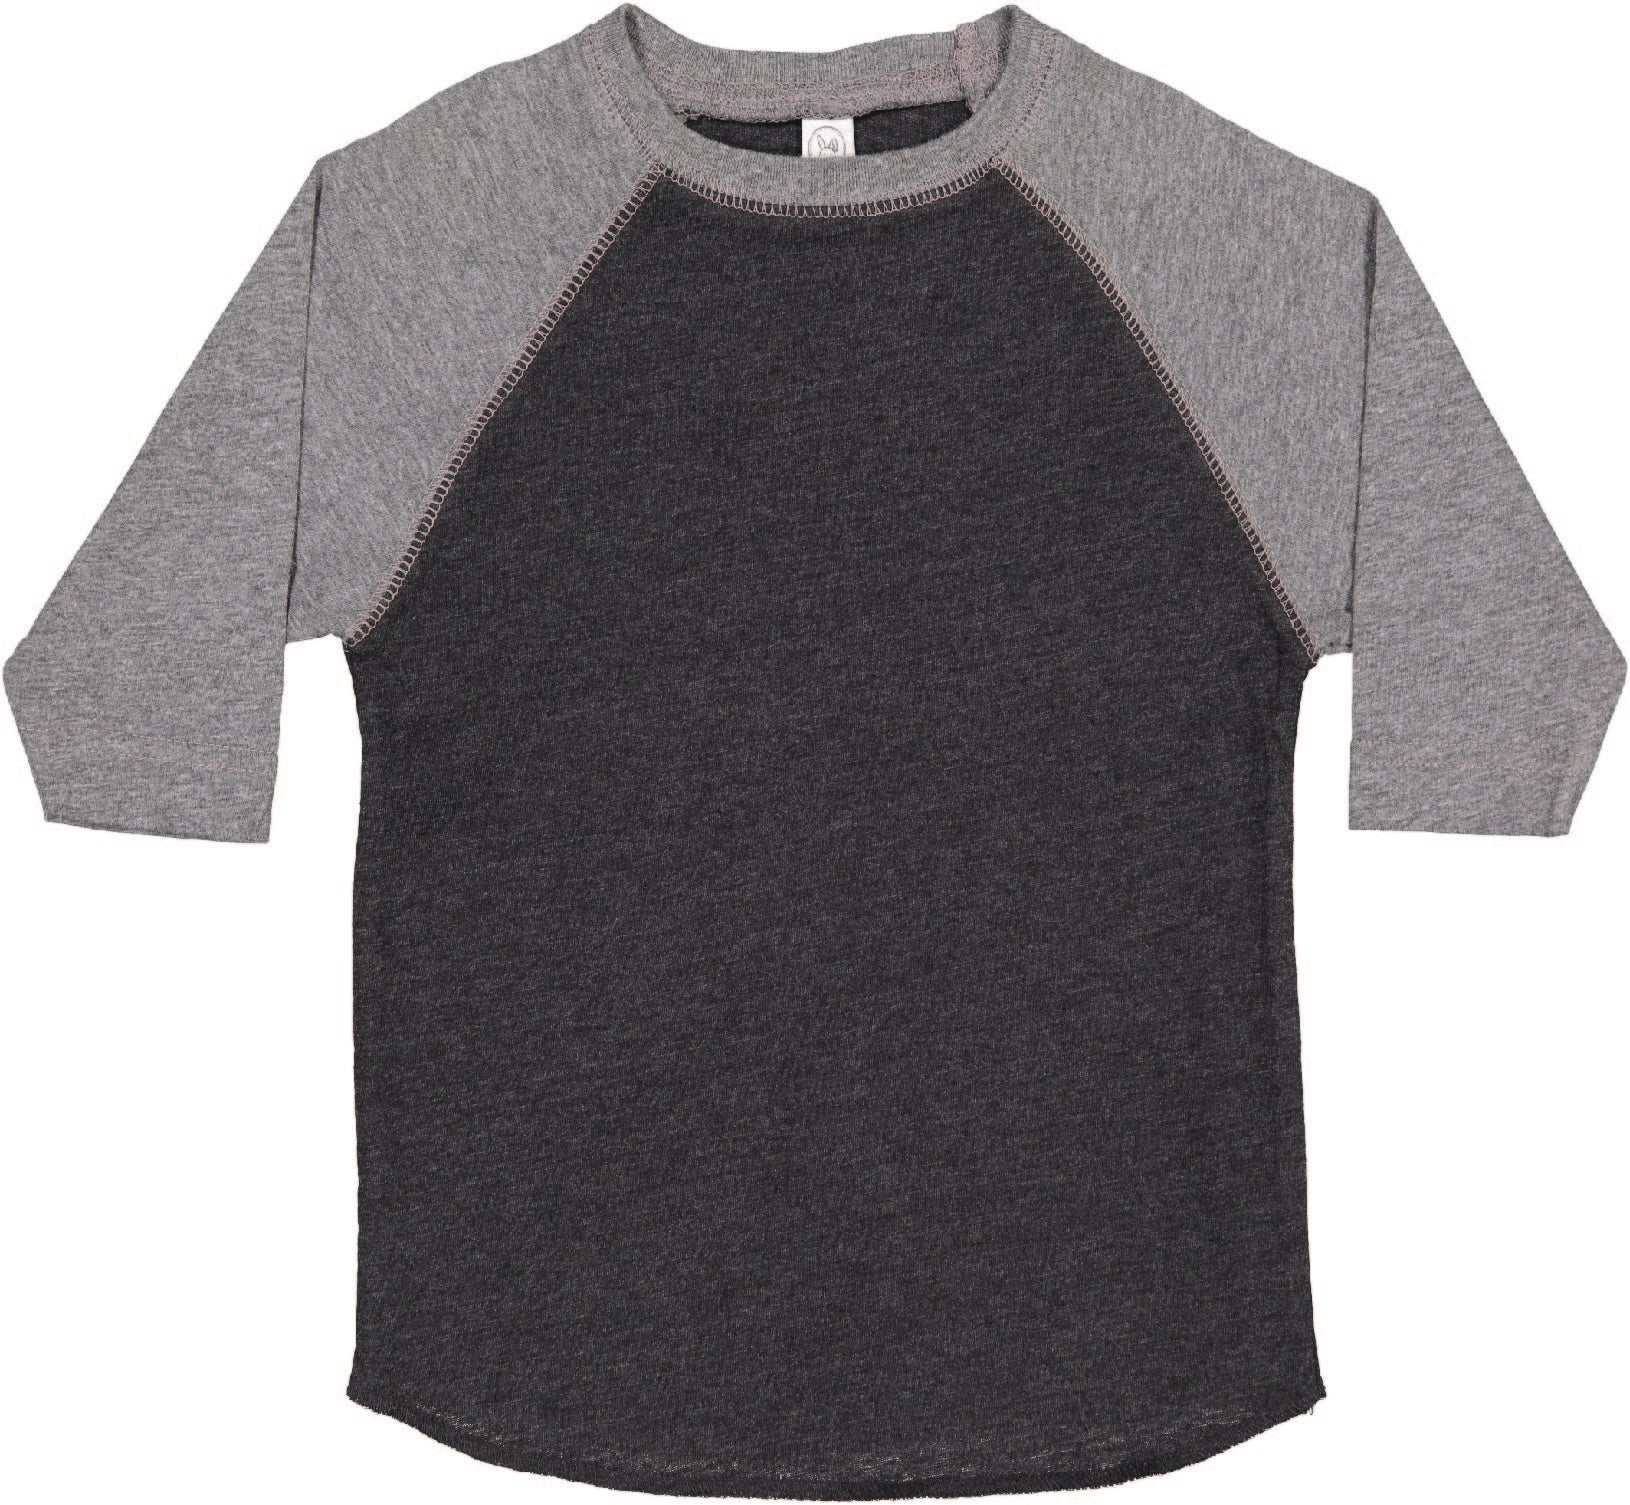 Toddler (Unisex) Raglan Baseball T-Shirt  (Vintage Smoke / Granite Heather)